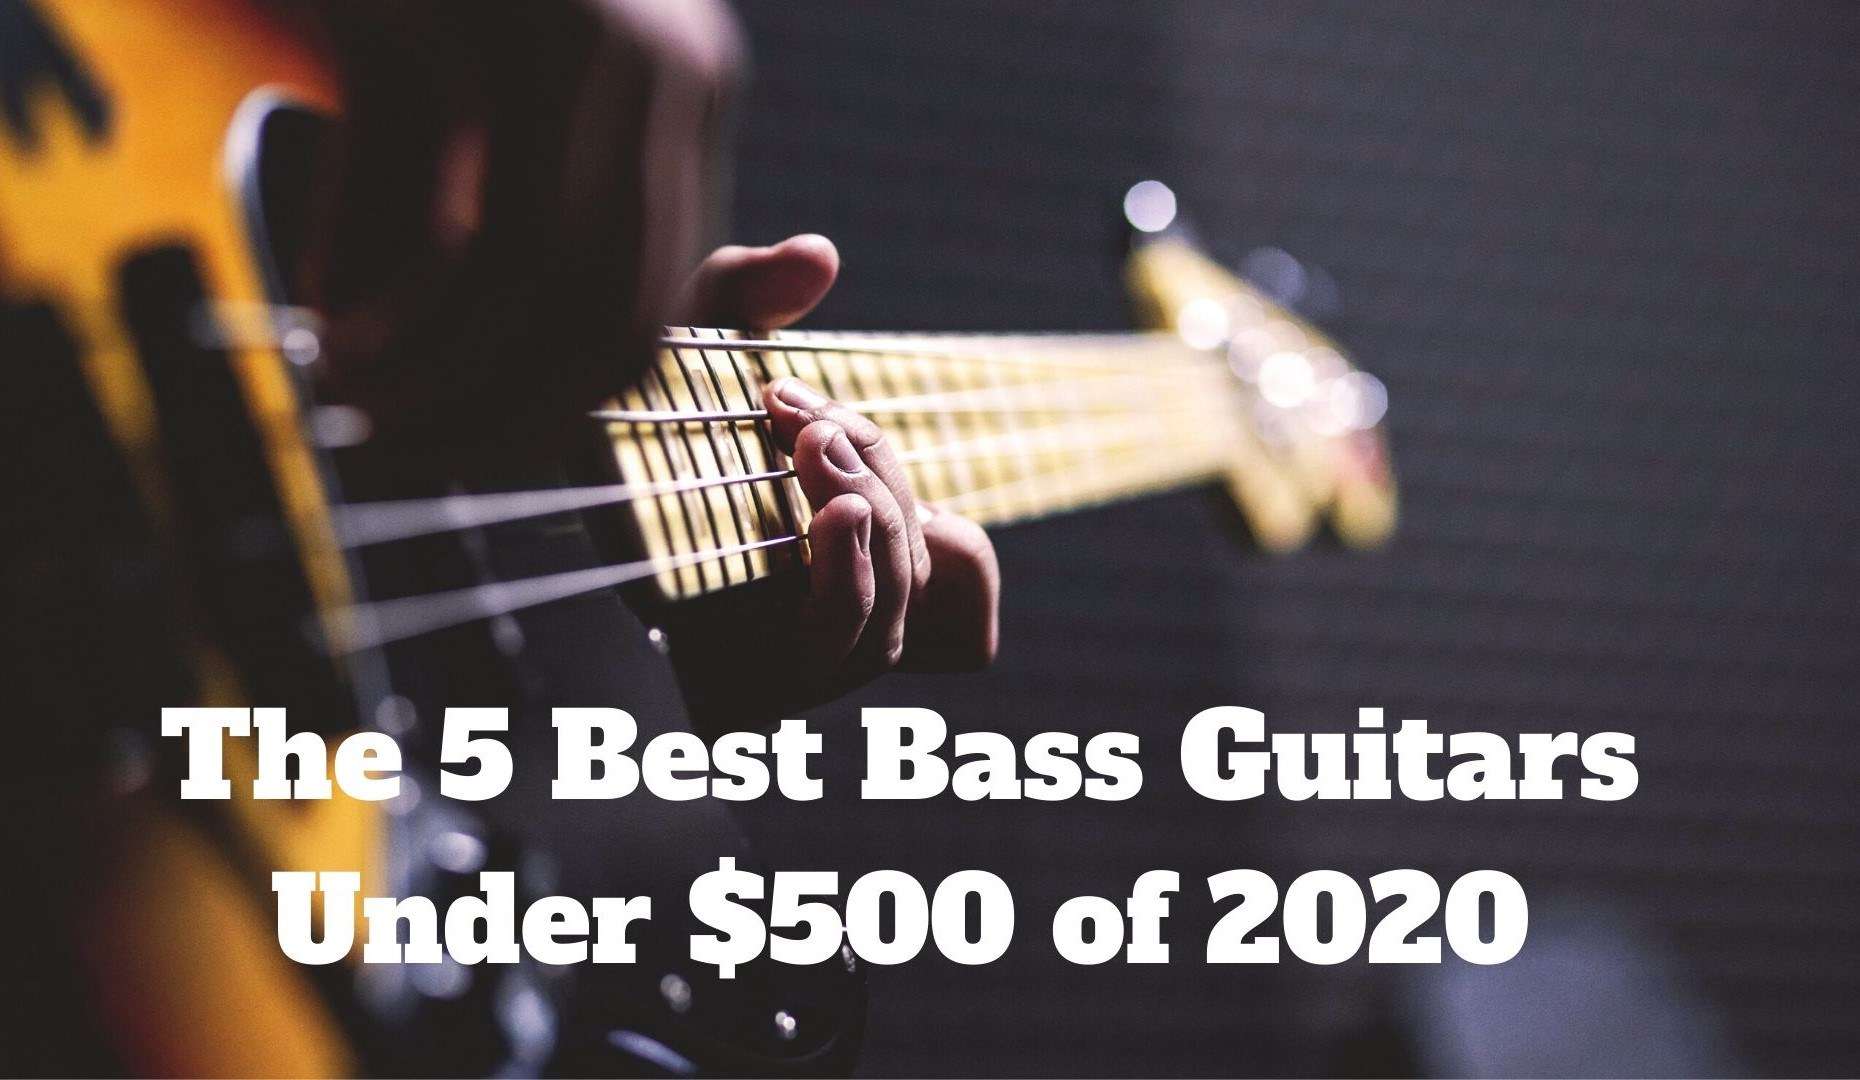 The 5 Best Bass Guitars of 2020